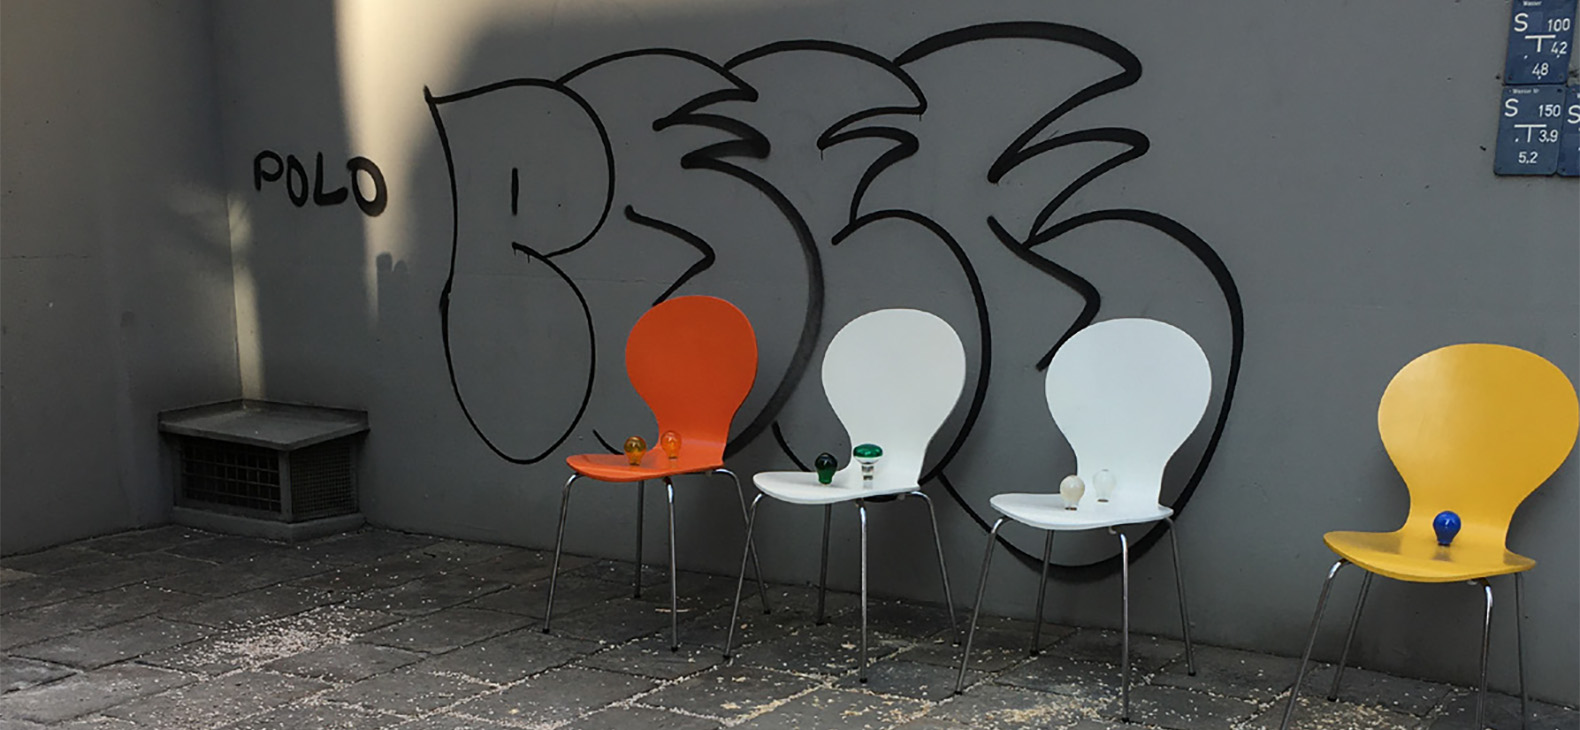 Mascha Illich: zero waste, Lockdown-Interventionen im öffentlichen Raum, 2021. In dem Bild sind vier Stühle zu sehen, die an einer grauen Wand stehen. Auf der Wand ist ein schwarzes Grafitti. Auf den Stühlen stehen 1-2 Glühbirnen.